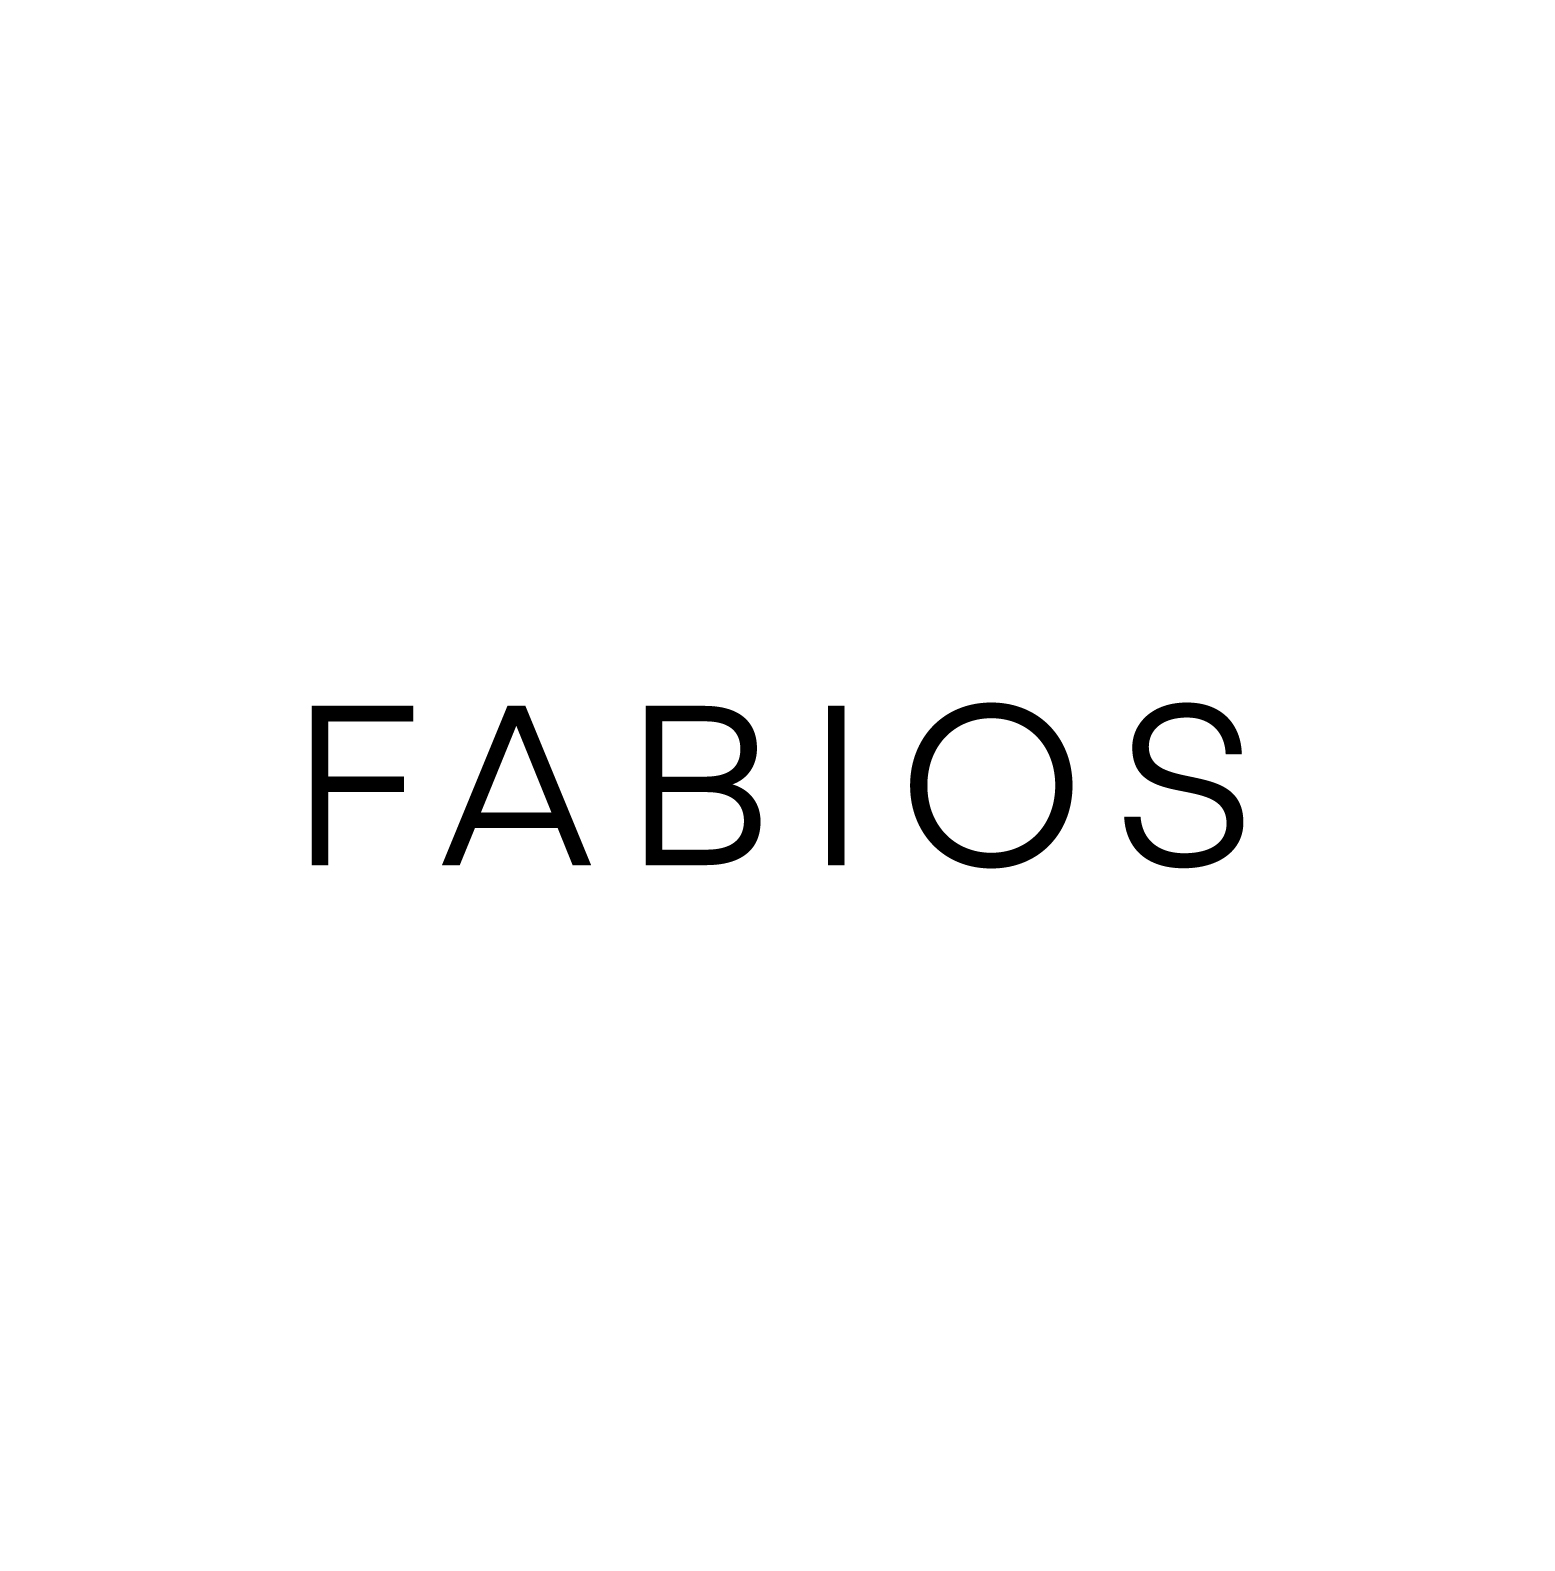 FABIOS Restaurationsbeteiligungs- und Betriebs GmbH